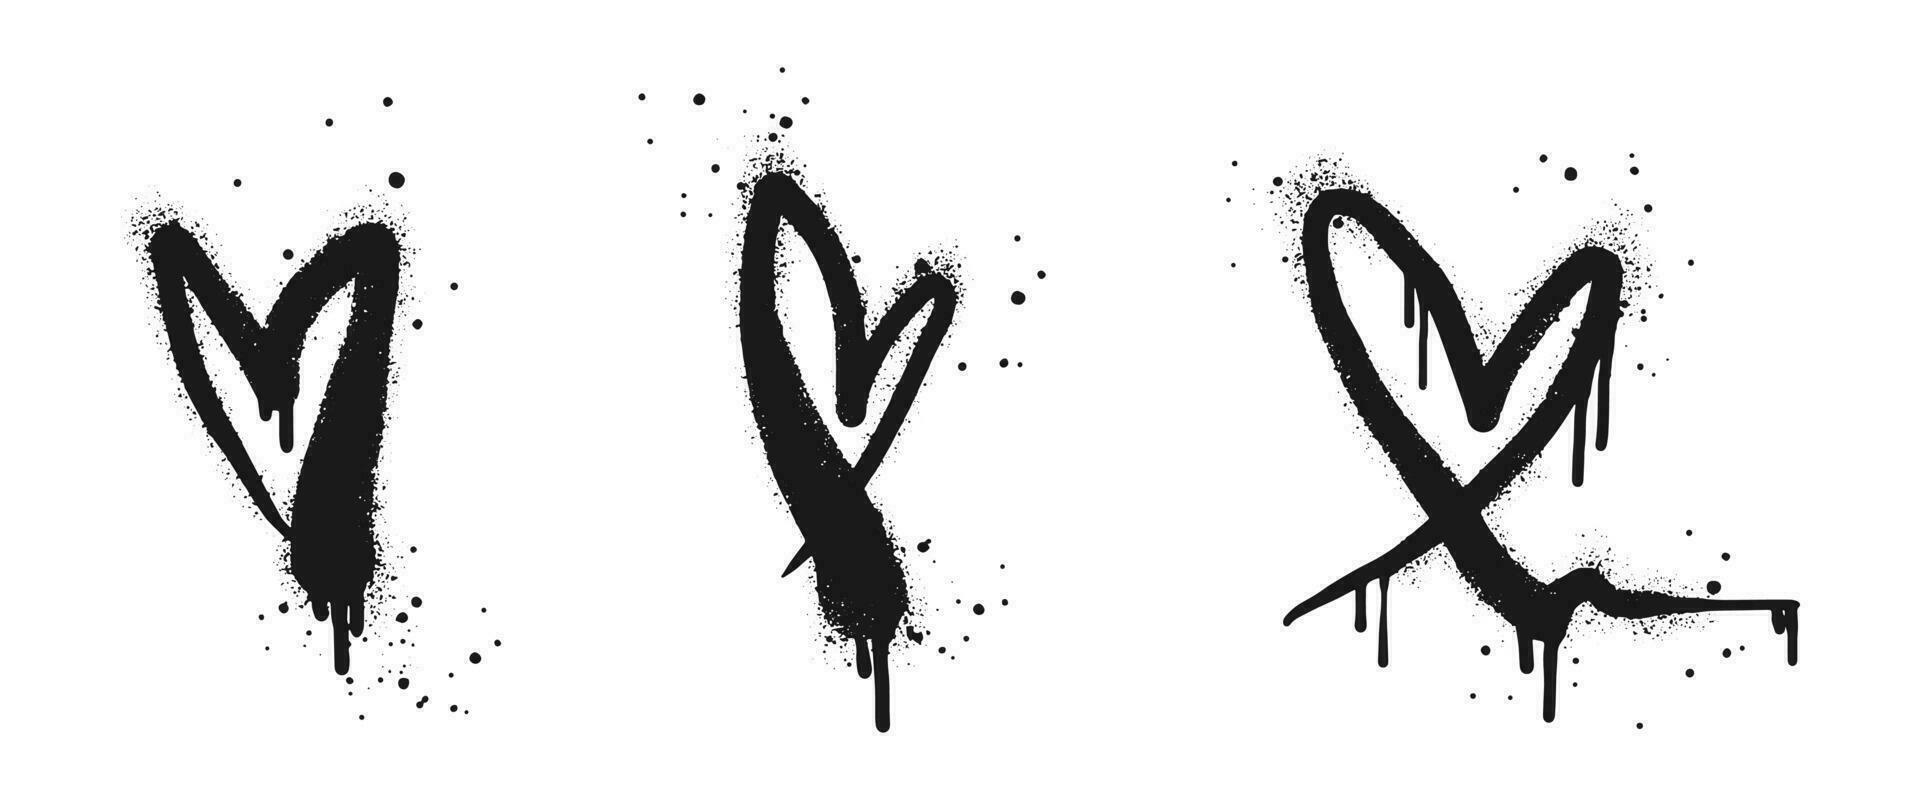 spray målad graffiti hjärta tecken i svart över vit. kärlek hjärta droppa symbol. isolerat på vit bakgrund. vektor illustration